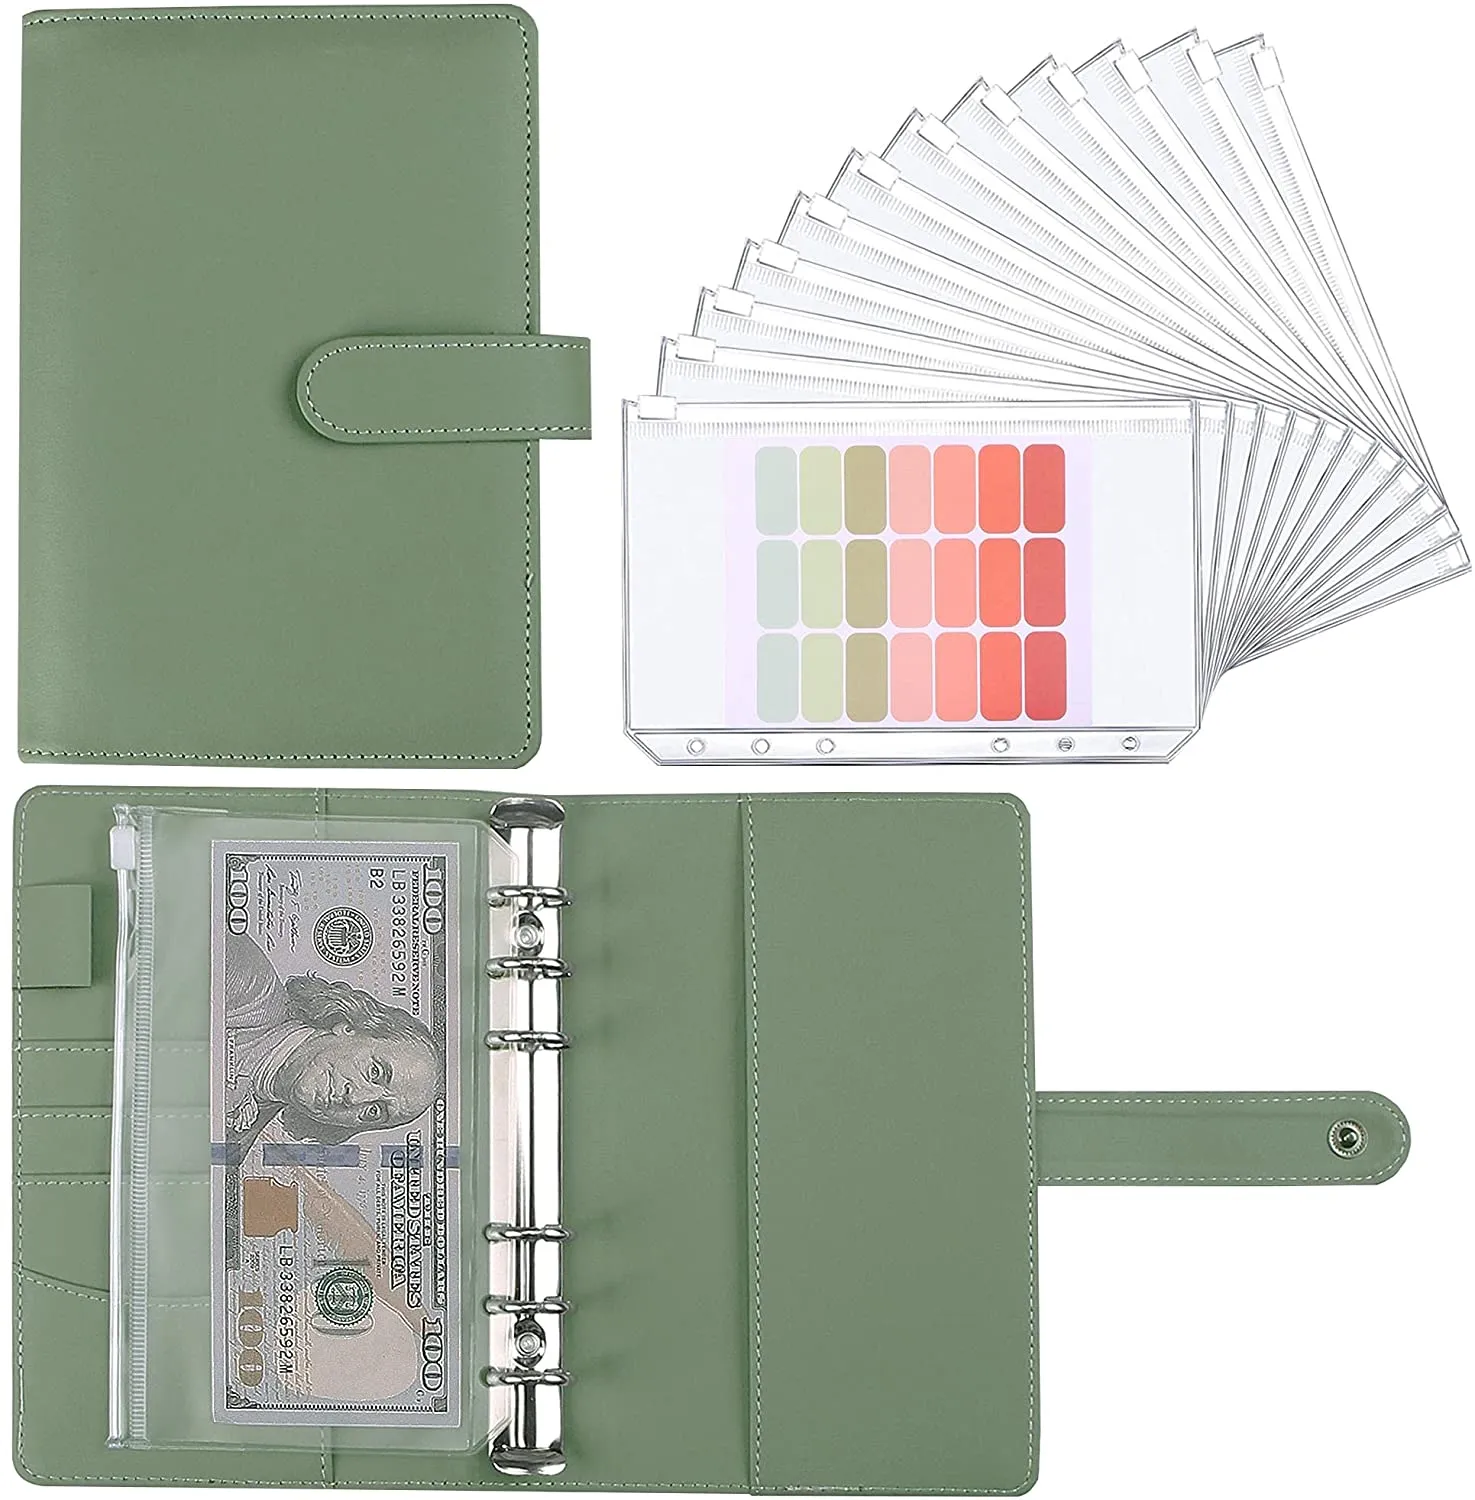 A6 Budget Bindemittelplaner mit 12 Stück Kassenumschläge, bunten PU-Leder-Notebook-Bindemittel mit 12 Stück A6-Binder-Taschen